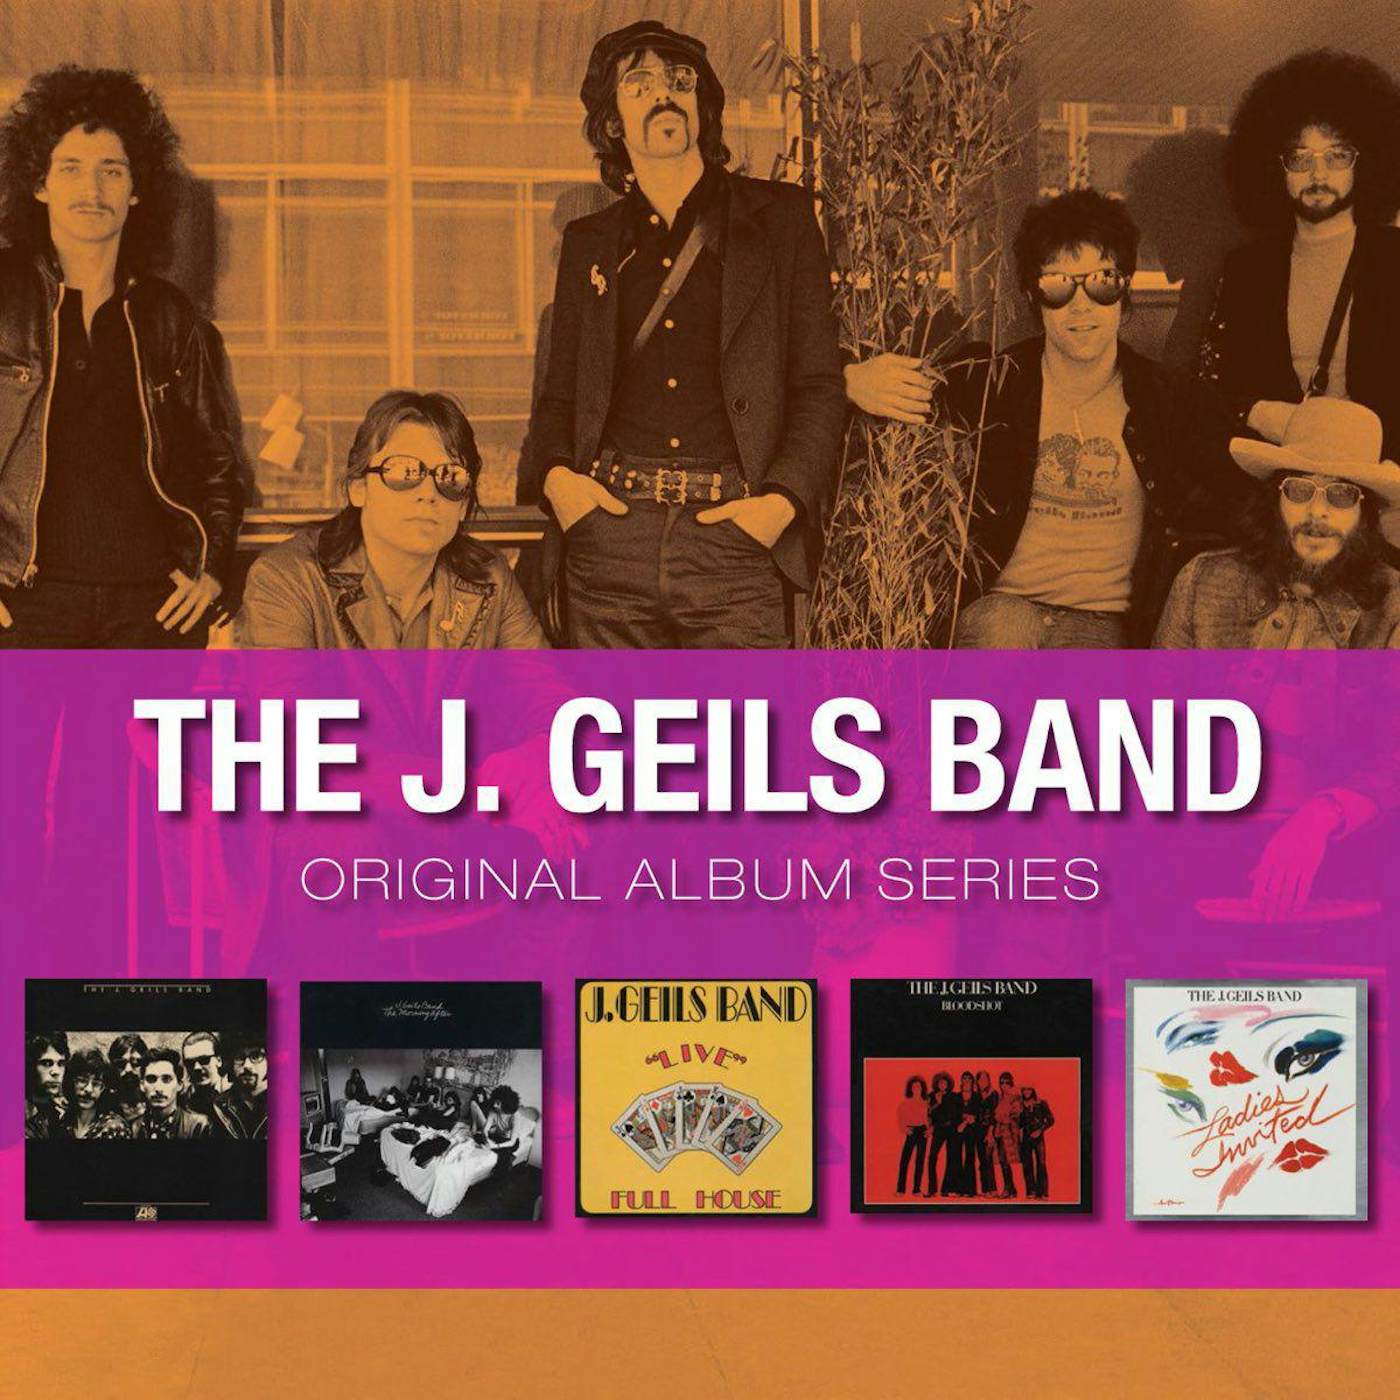 The J. Geils Band Original Album Series CD Box Set